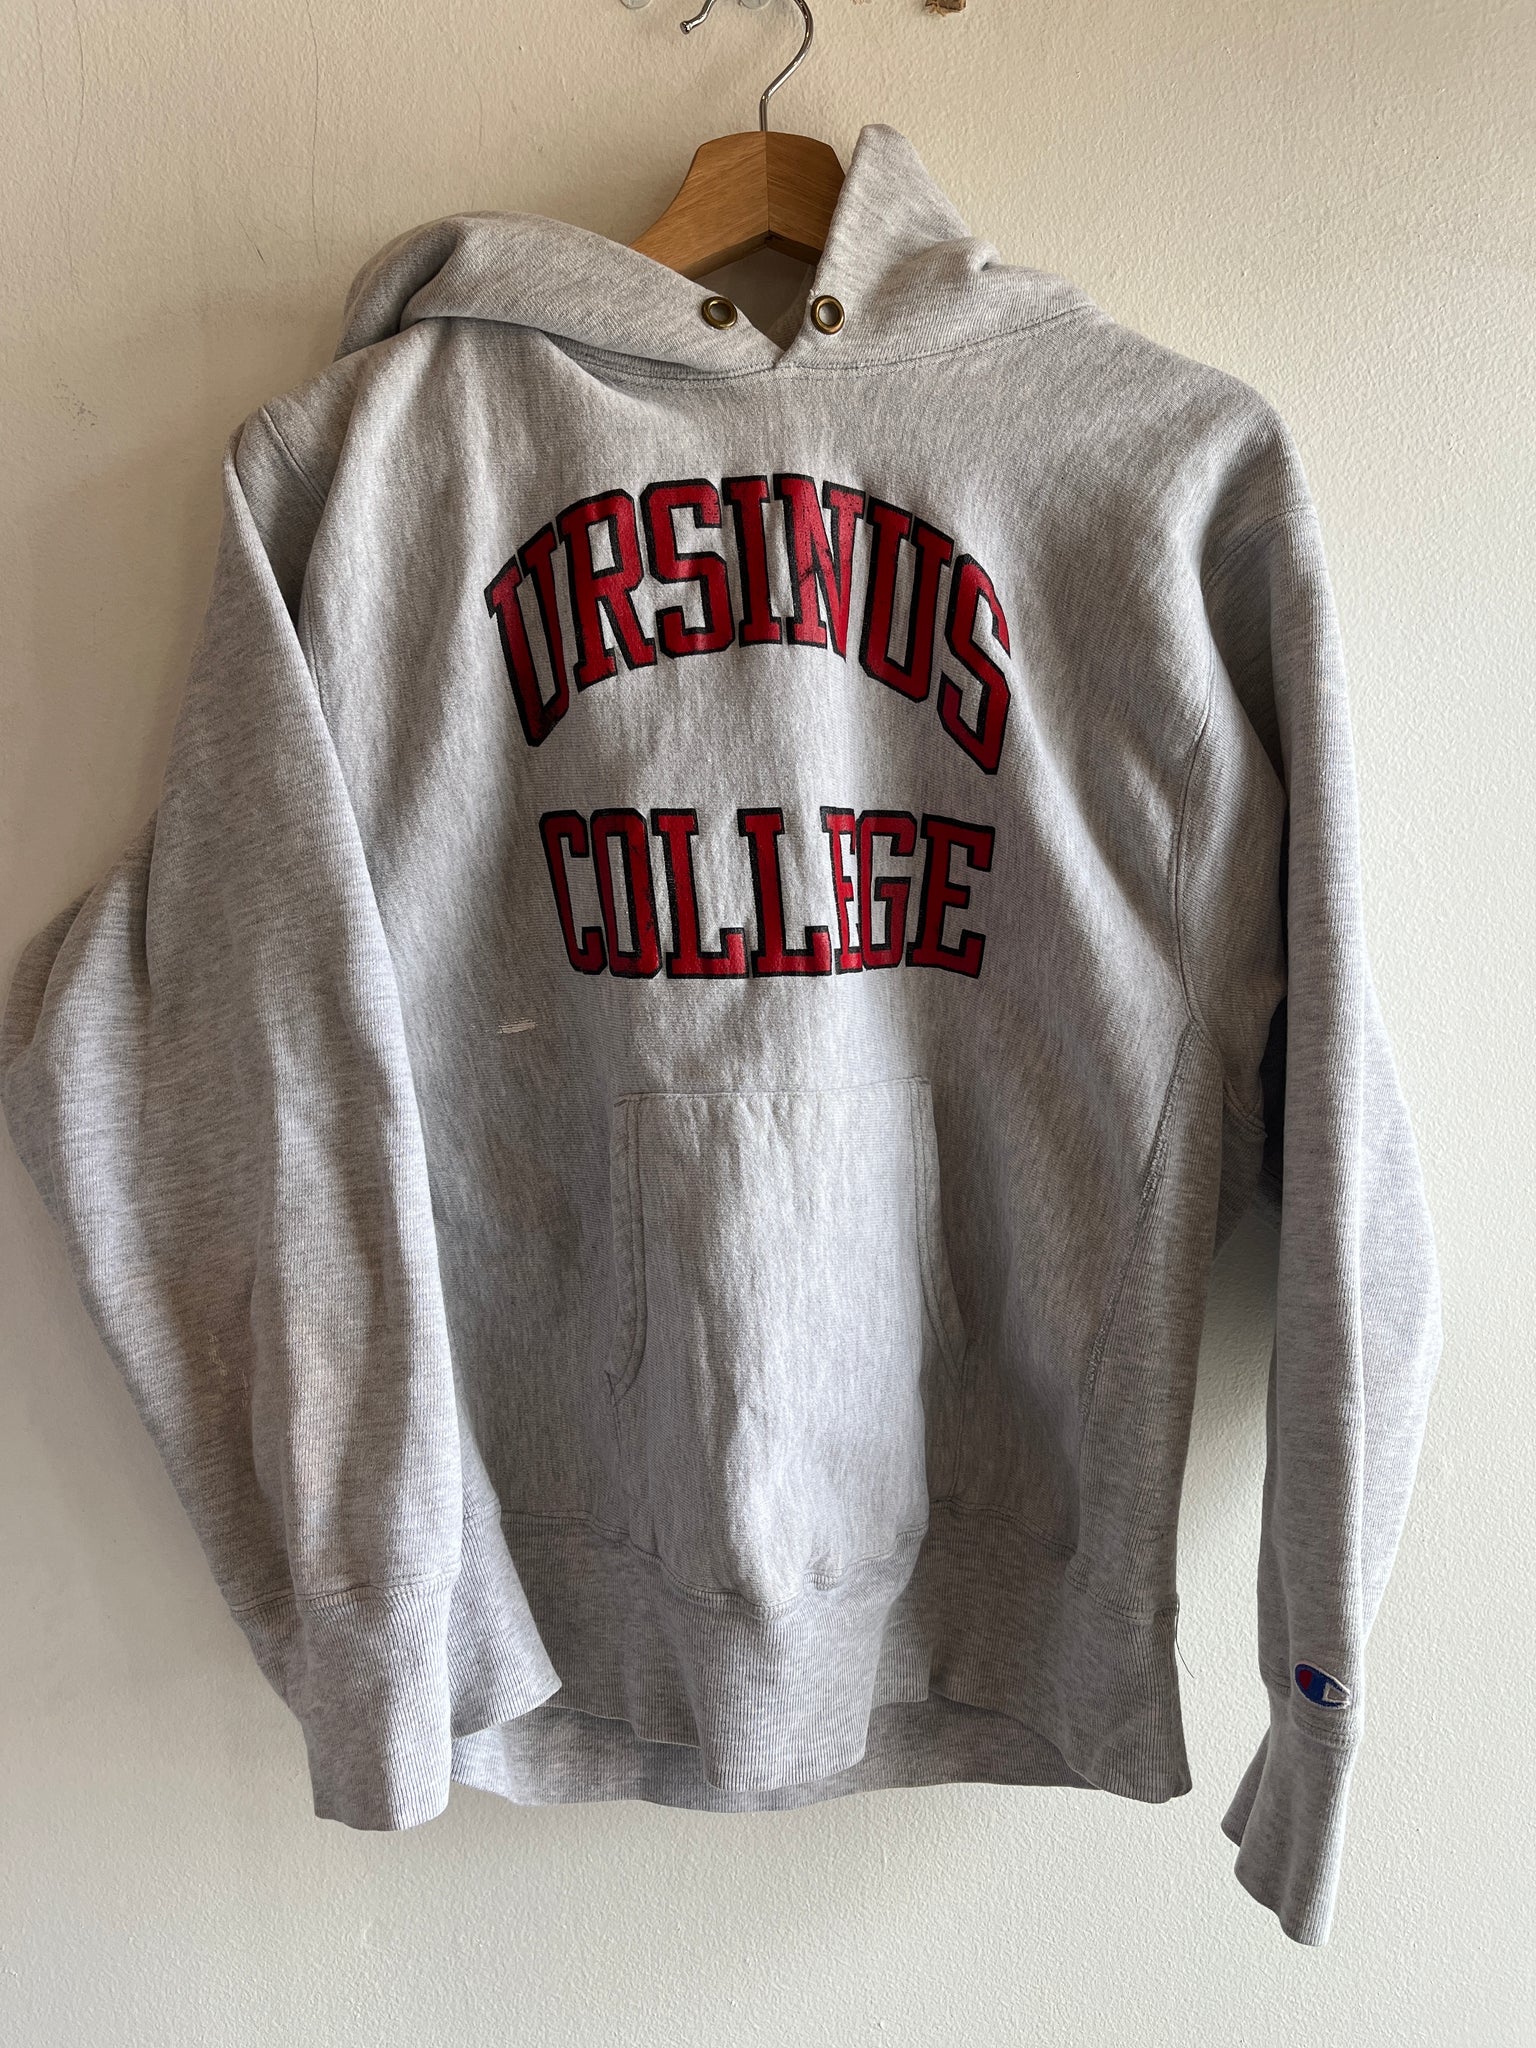 Vintage 1980’s Ursinus College Reverse Weave Hooded Sweatshirt